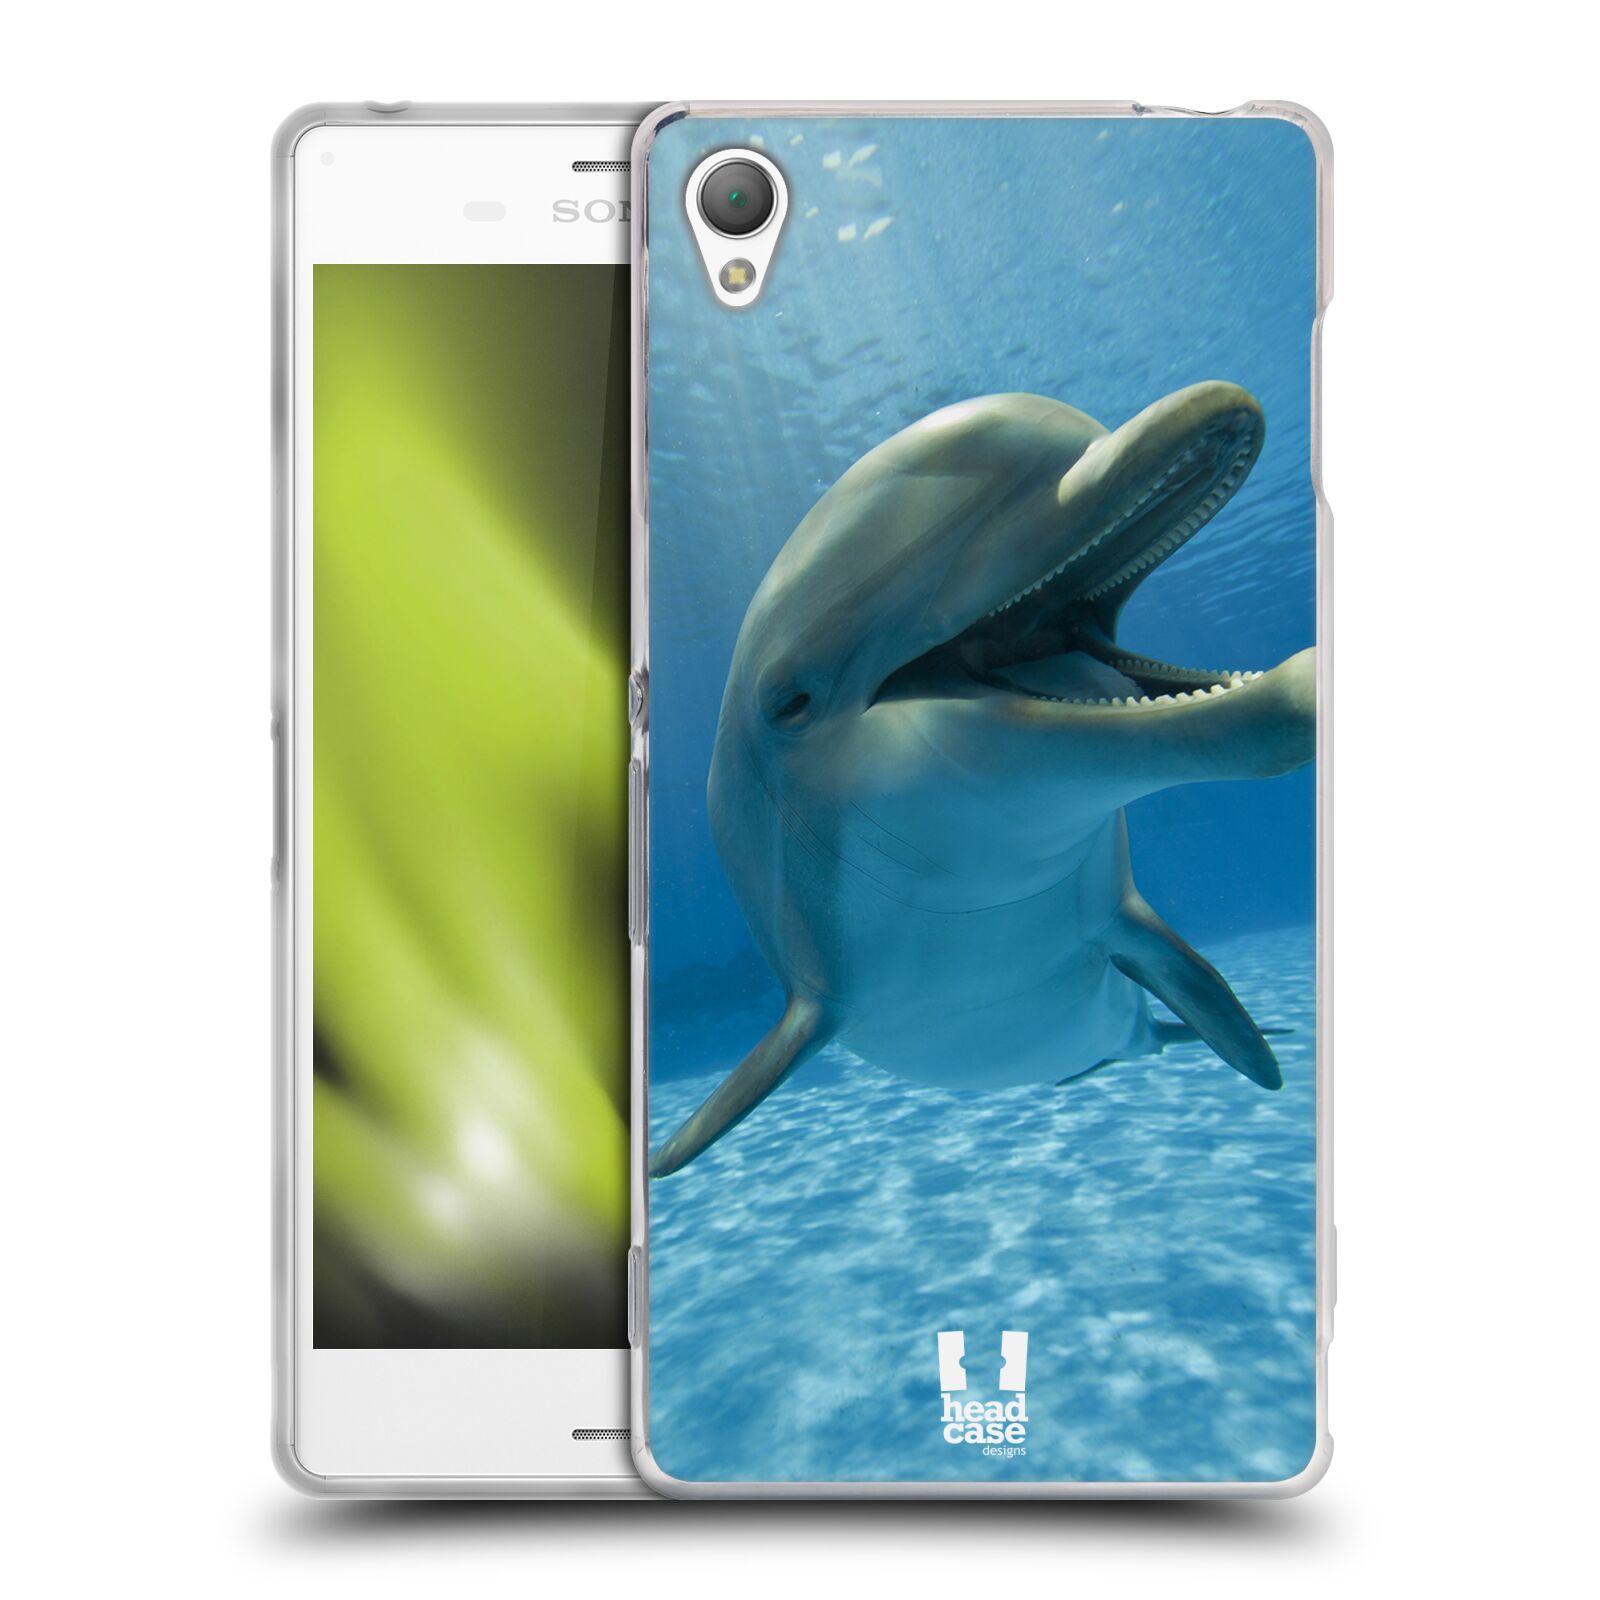 HEAD CASE silikonový obal na mobil Sony Xperia Z3 vzor Divočina, Divoký život a zvířata foto MODRÁ DELFÍN